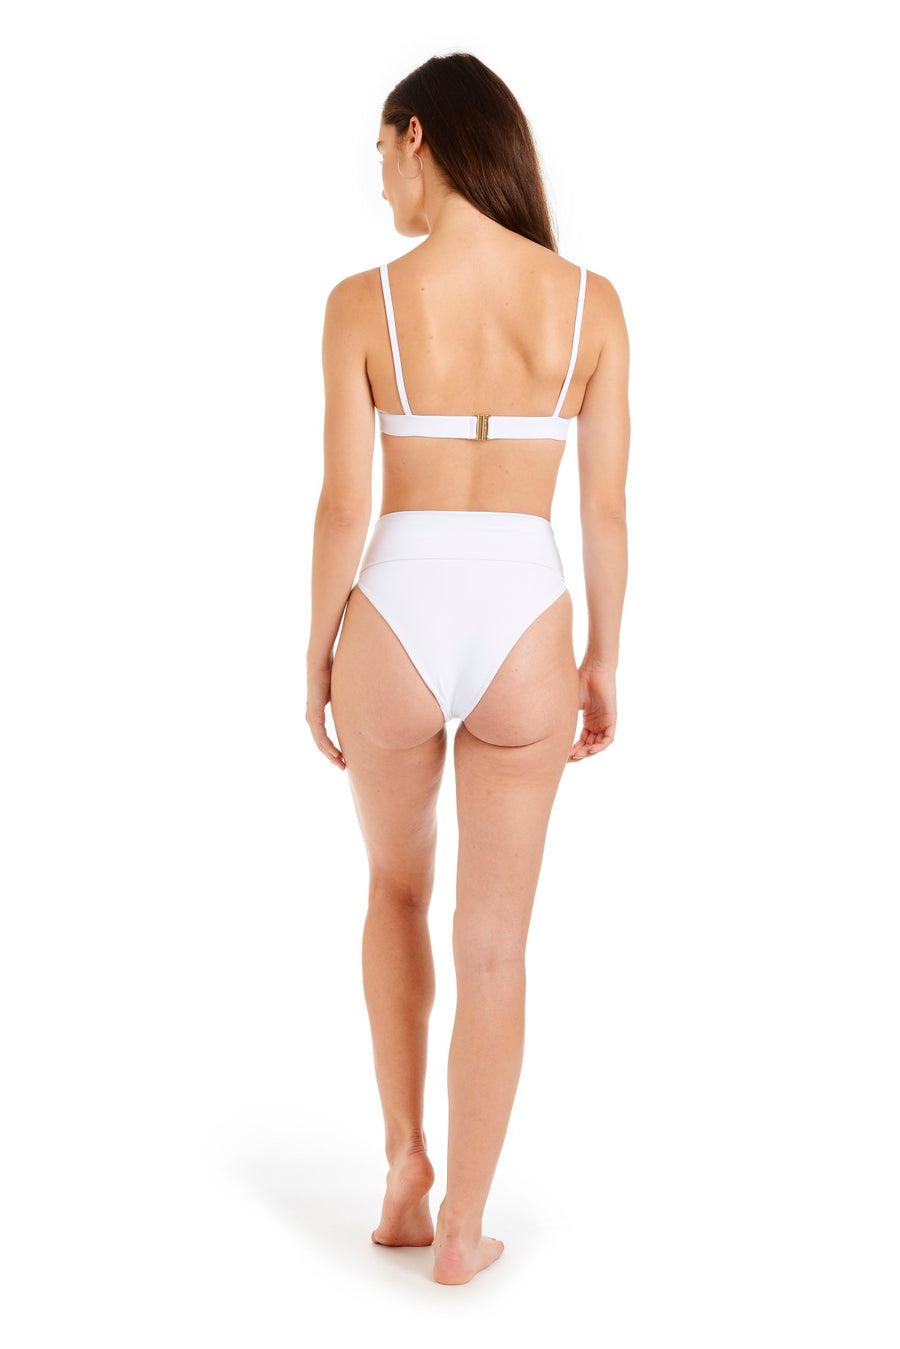 Back view of a woman wearing a white bikini top